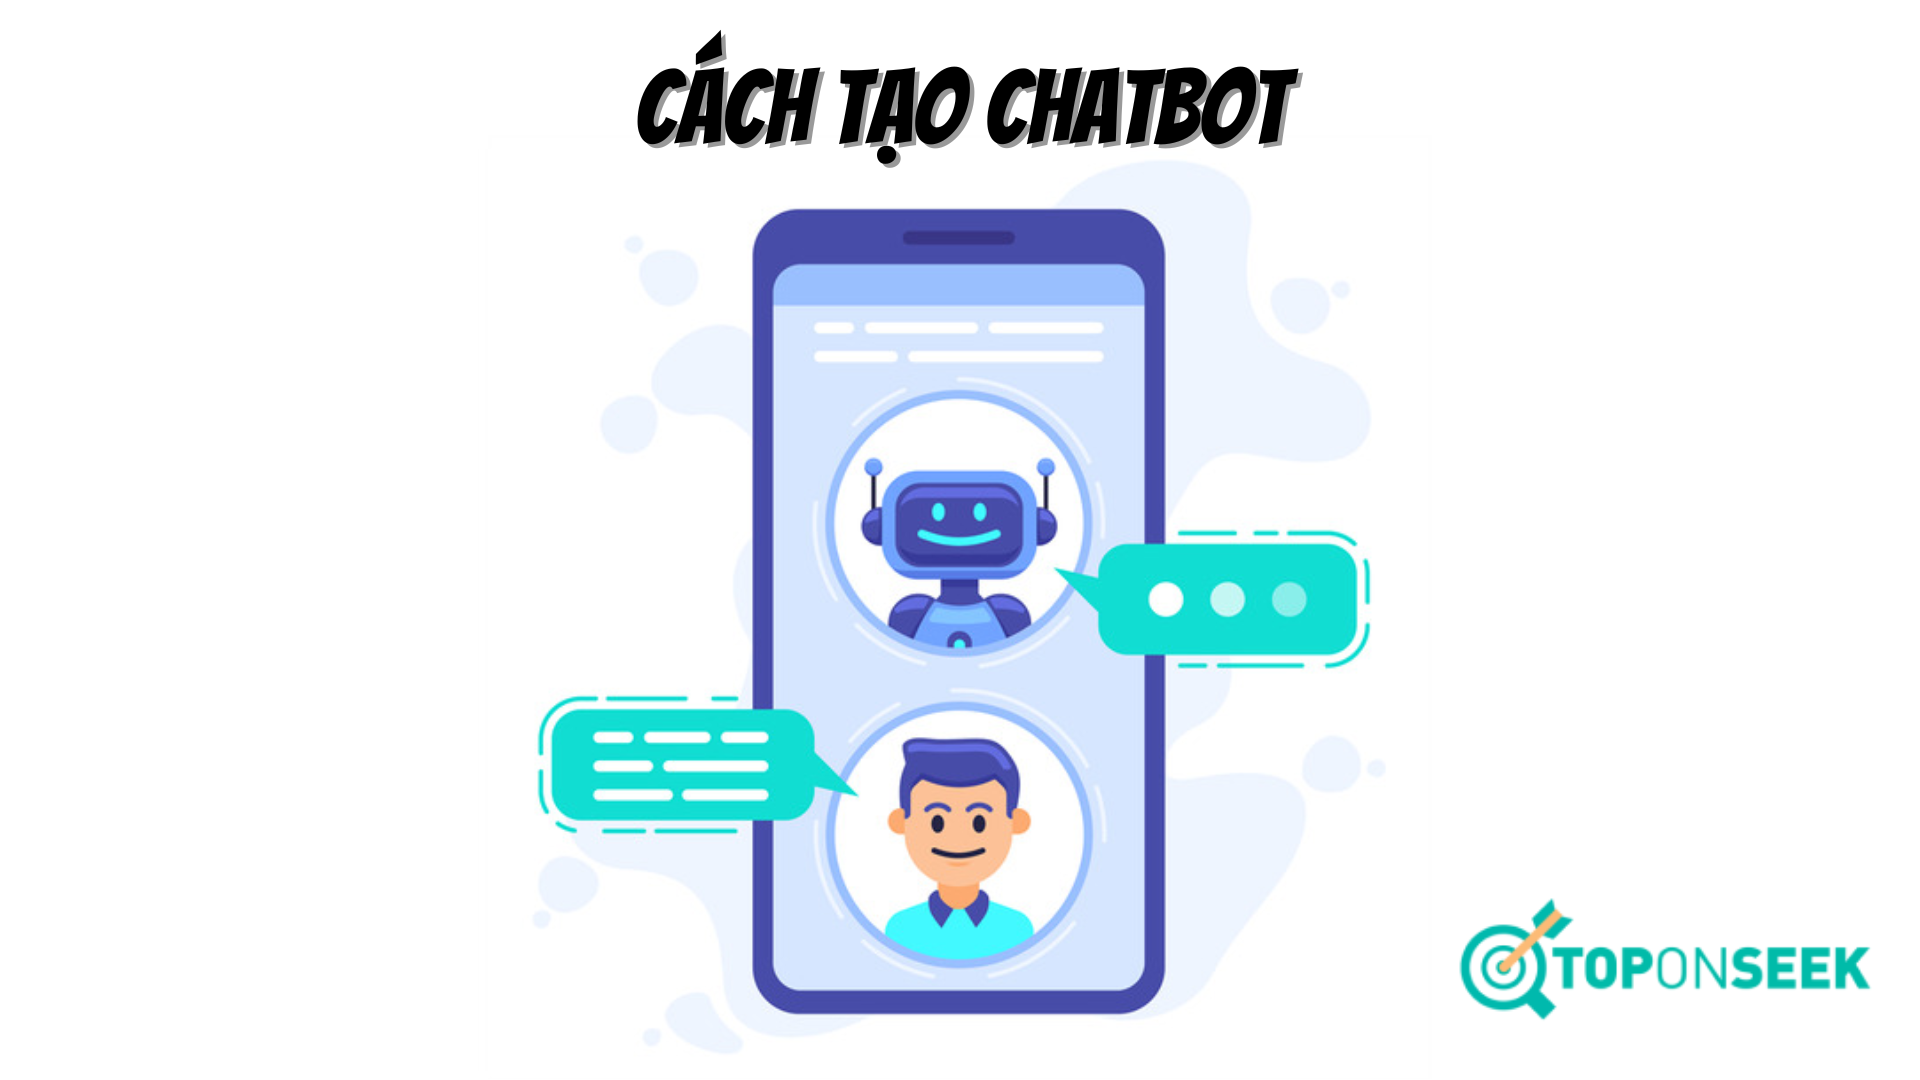 Cách tạo ra chatbot mang đến fanpage facebook Facebook, Messenger, Zalo free và hiệu suất cao 2023